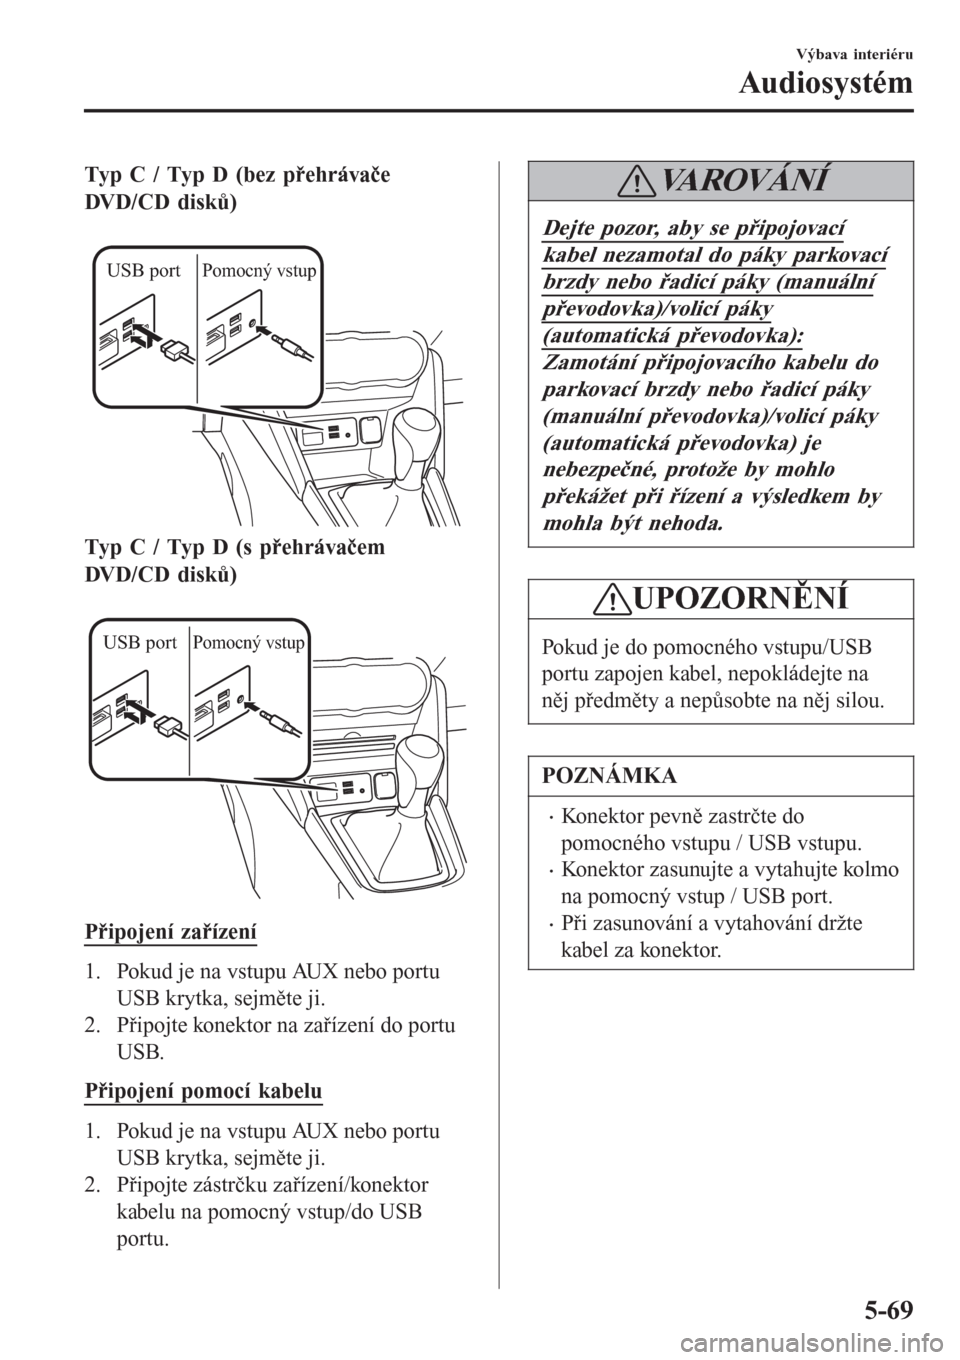 MAZDA MODEL CX-3 2016  Návod k obsluze (in Czech) Typ C / Typ D (bez přehrávače
DVD/CD disků)
 
USB portPomocný vstup
Typ C / Typ D (s přehrávačem
DVD/CD disků)
 
USB portPomocný vstup
Připojení zařízení
1. Pokud je na vstupu AUX nebo 